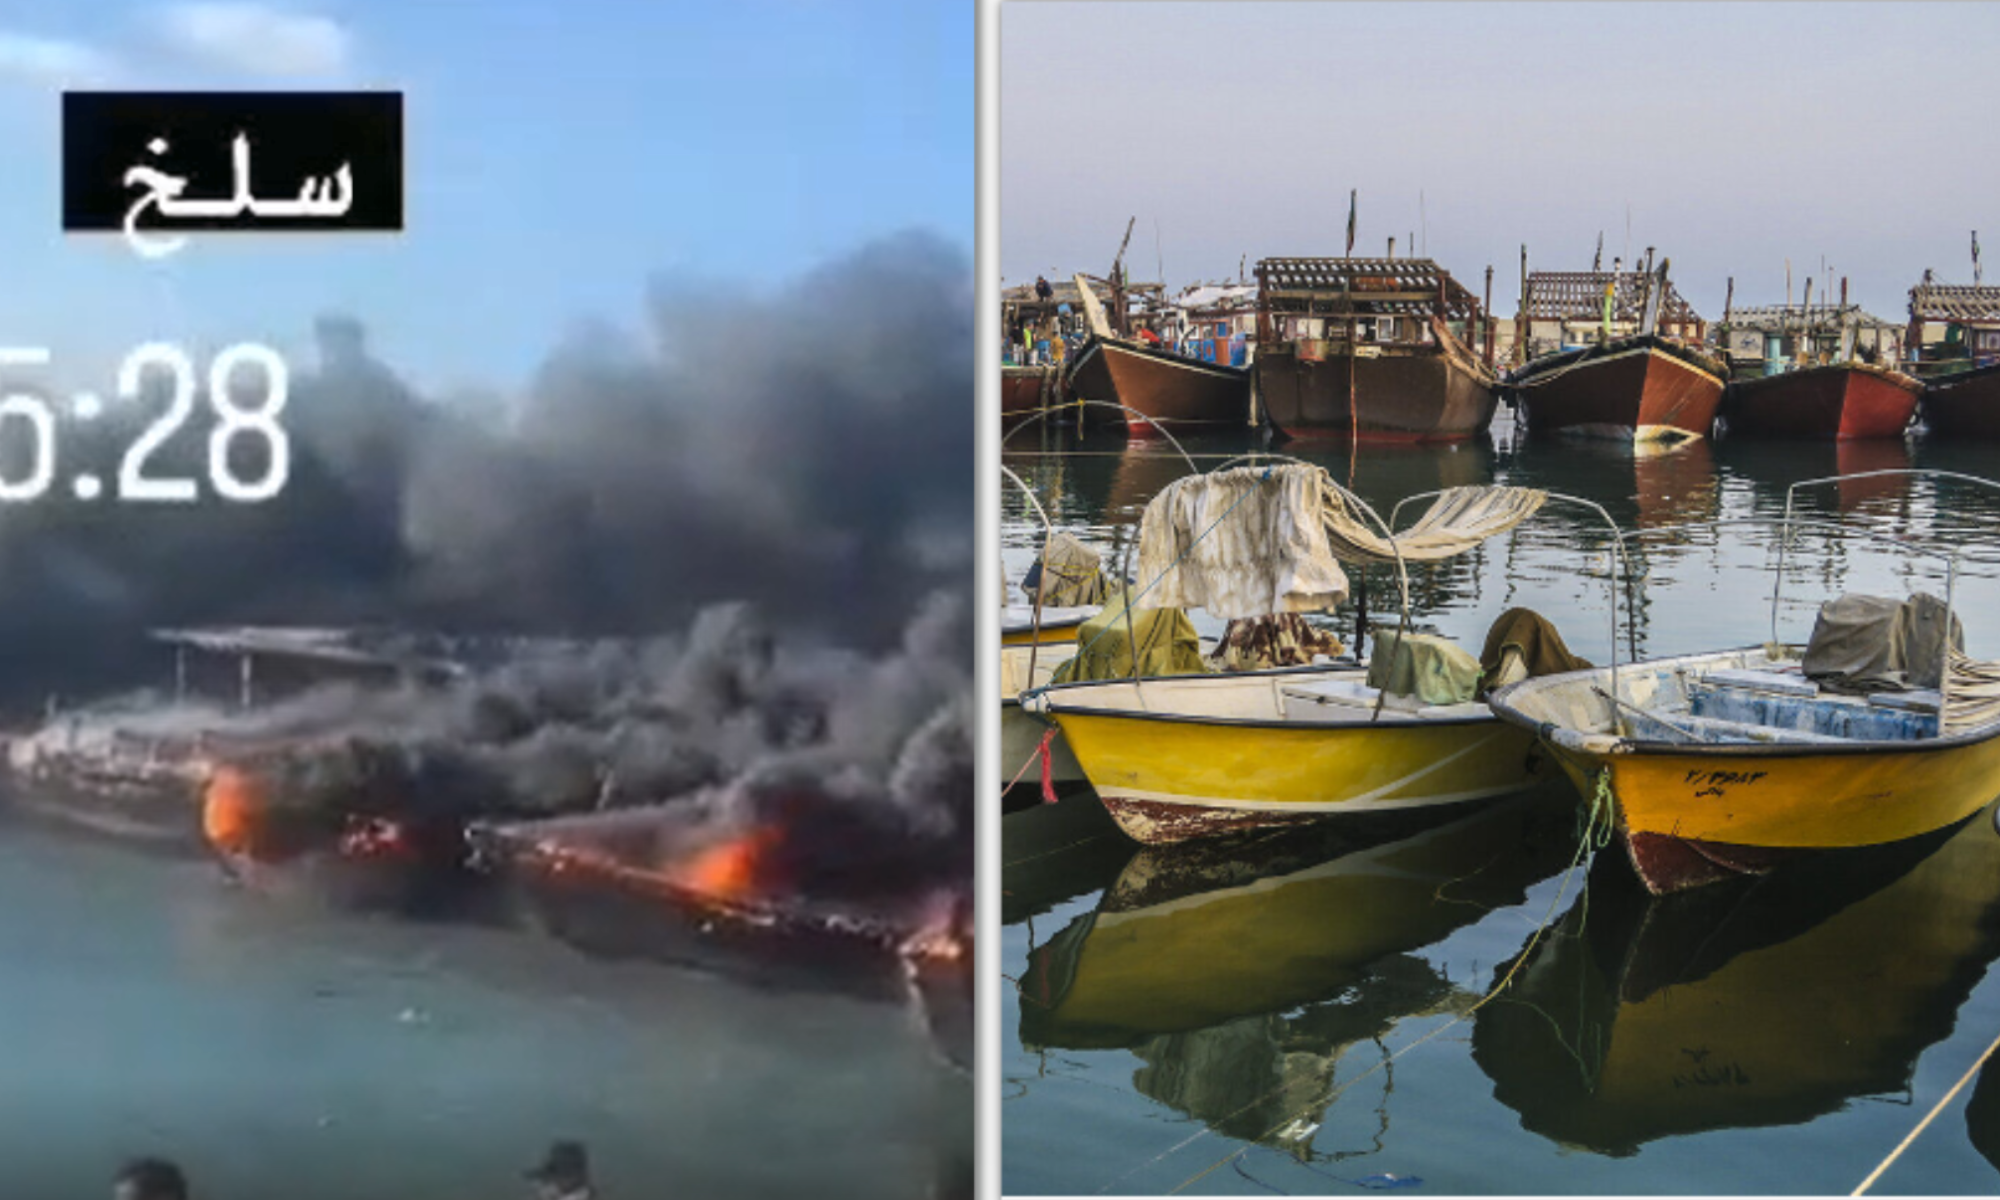 Le profil des bateaux en feu correspond à celui des bateaux de pêche iraniens.